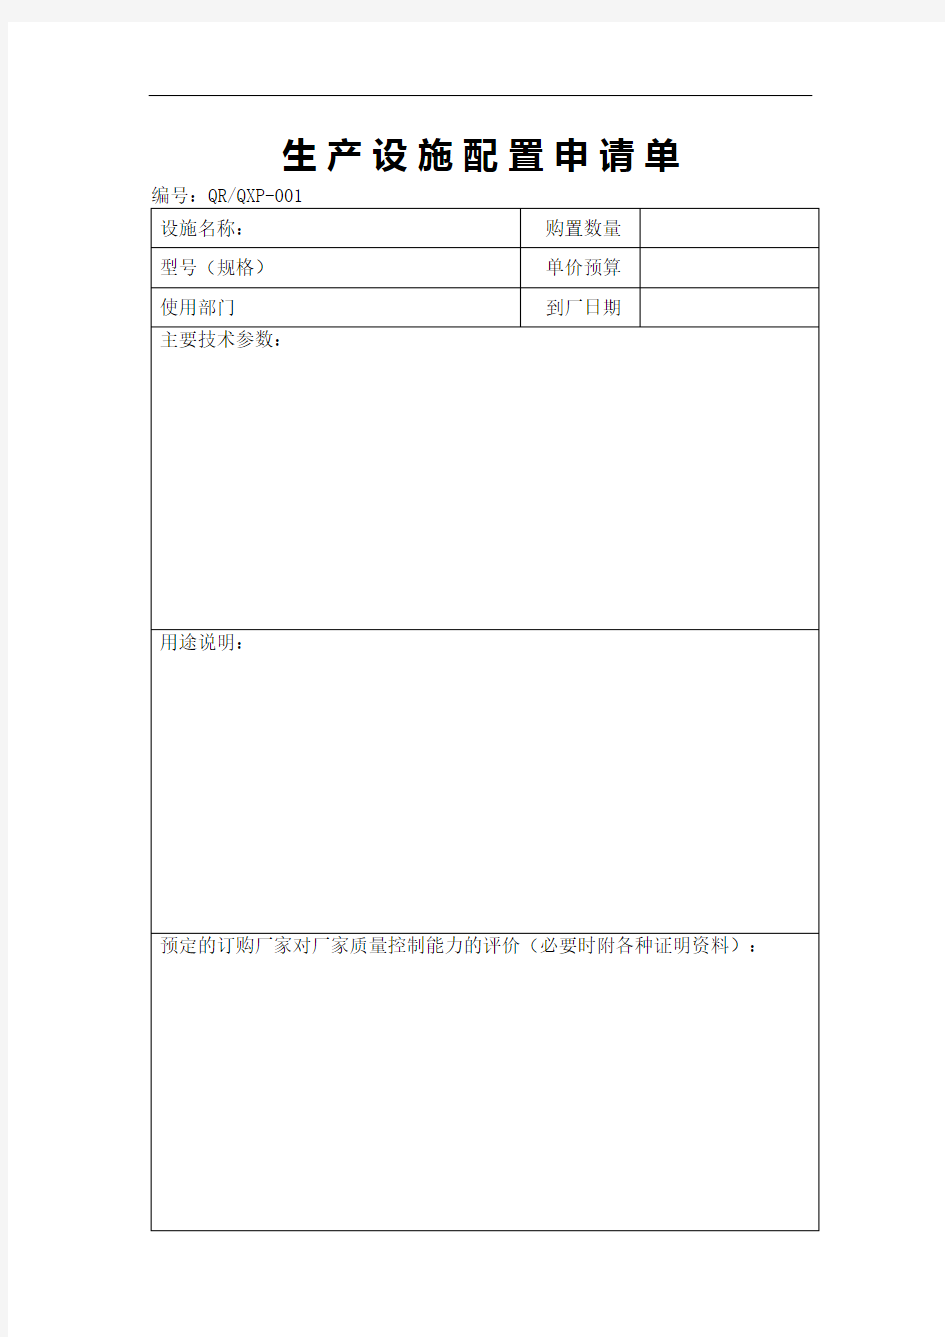 生产设施配置申请单表格格式